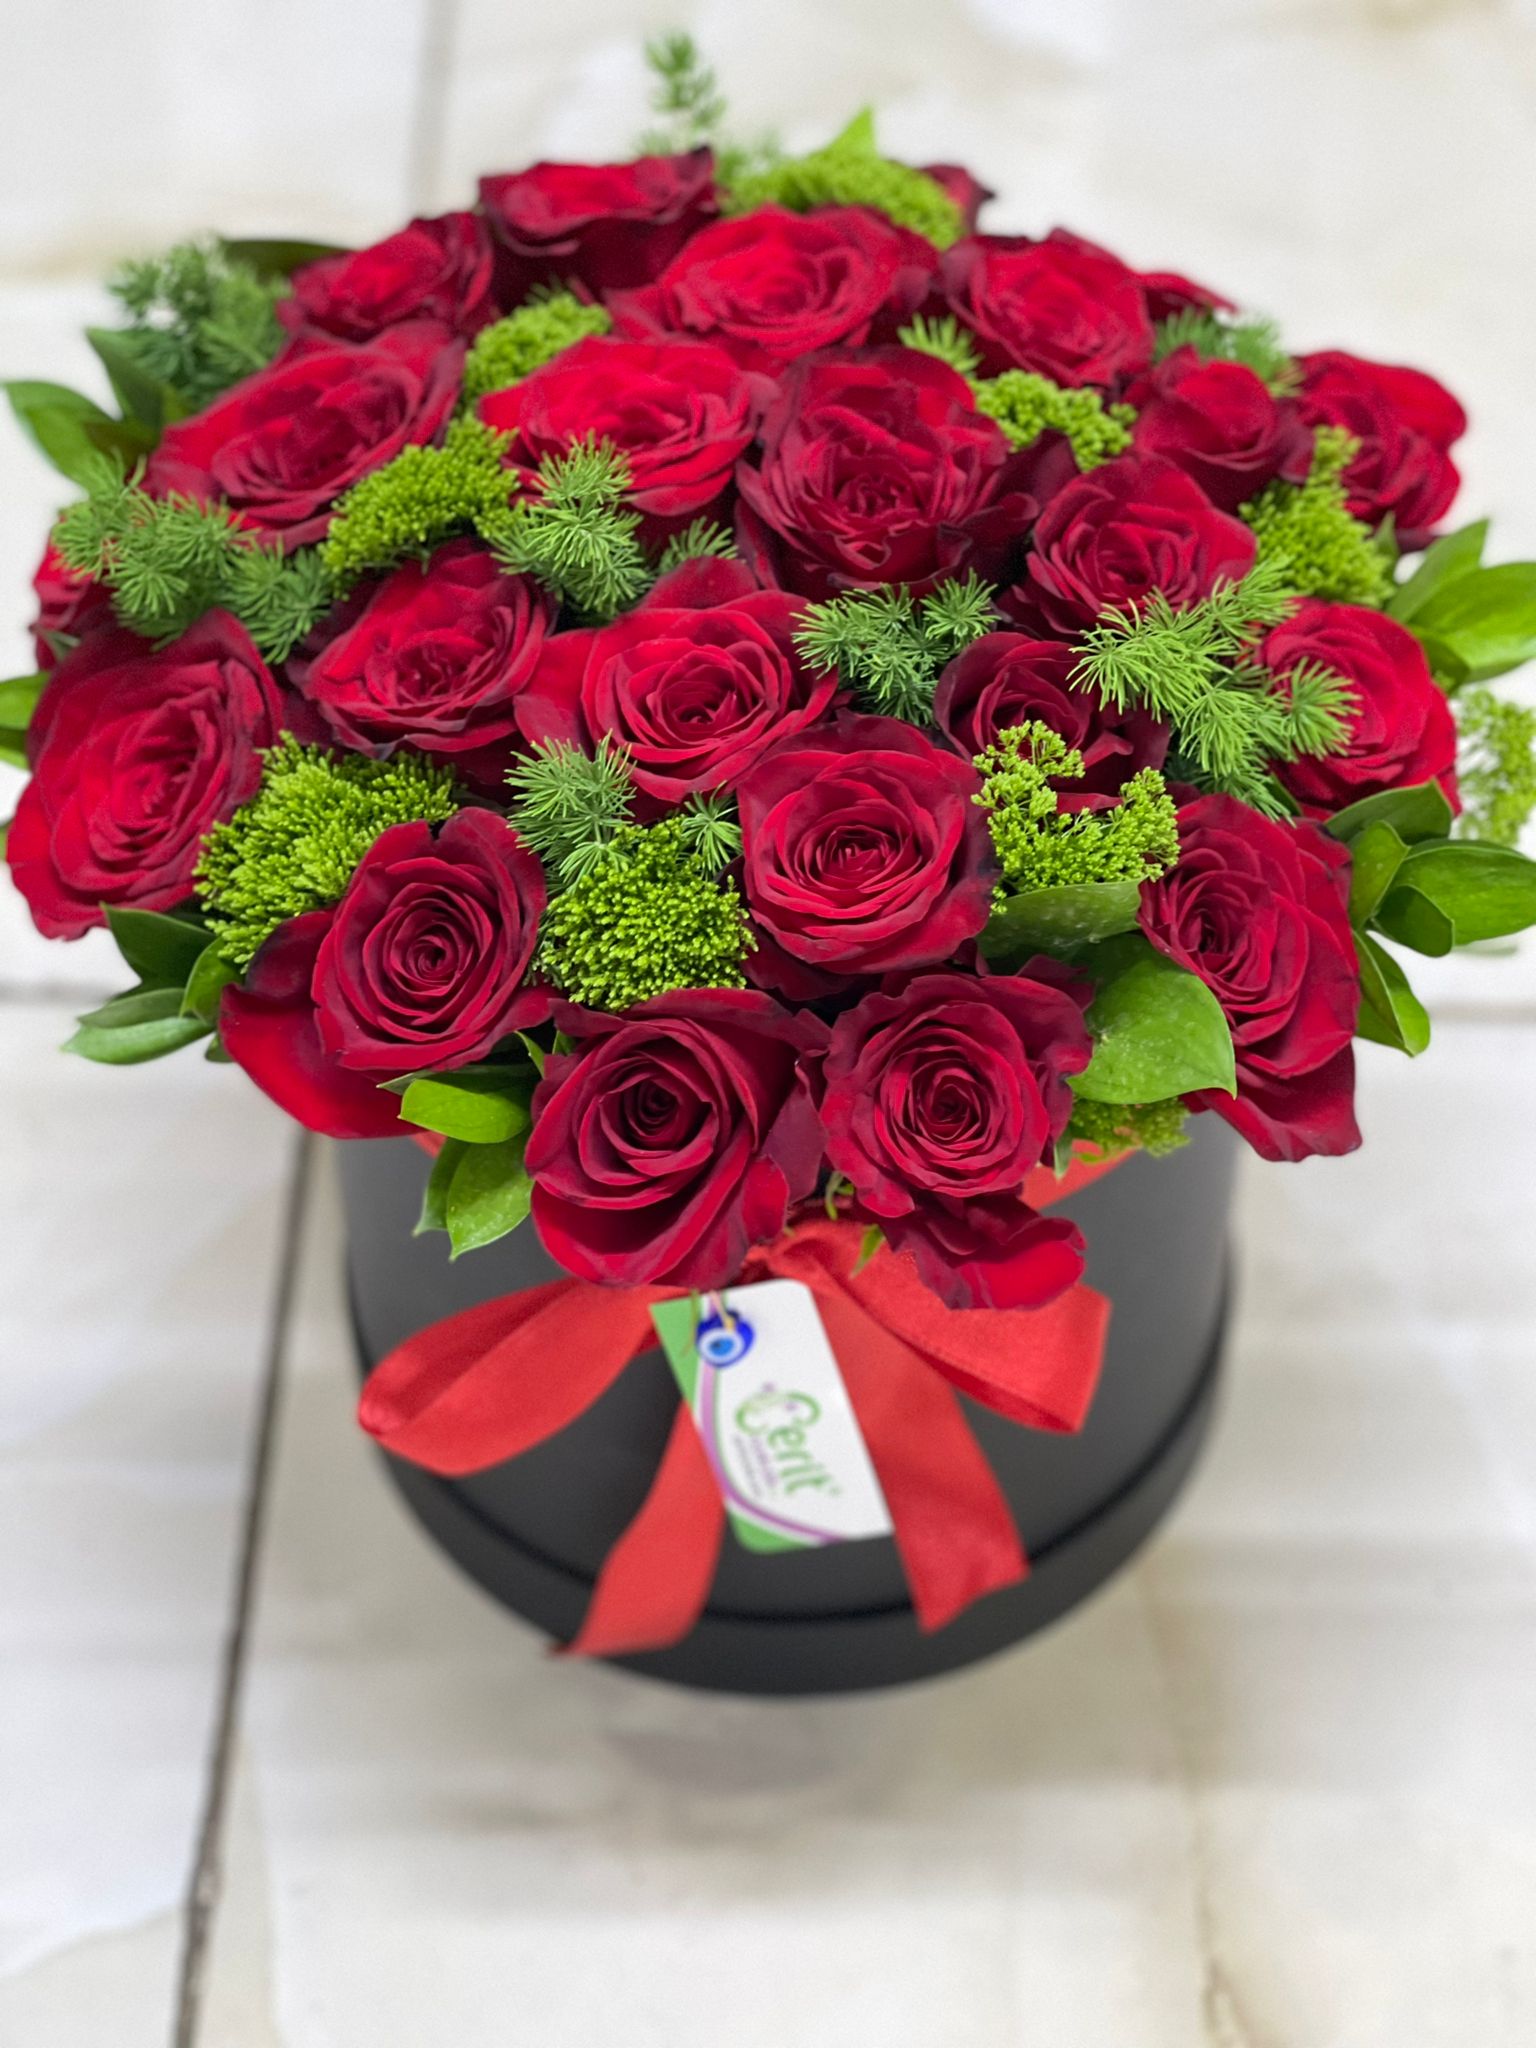  Belek Flower 29 Red Roses in a Black Box